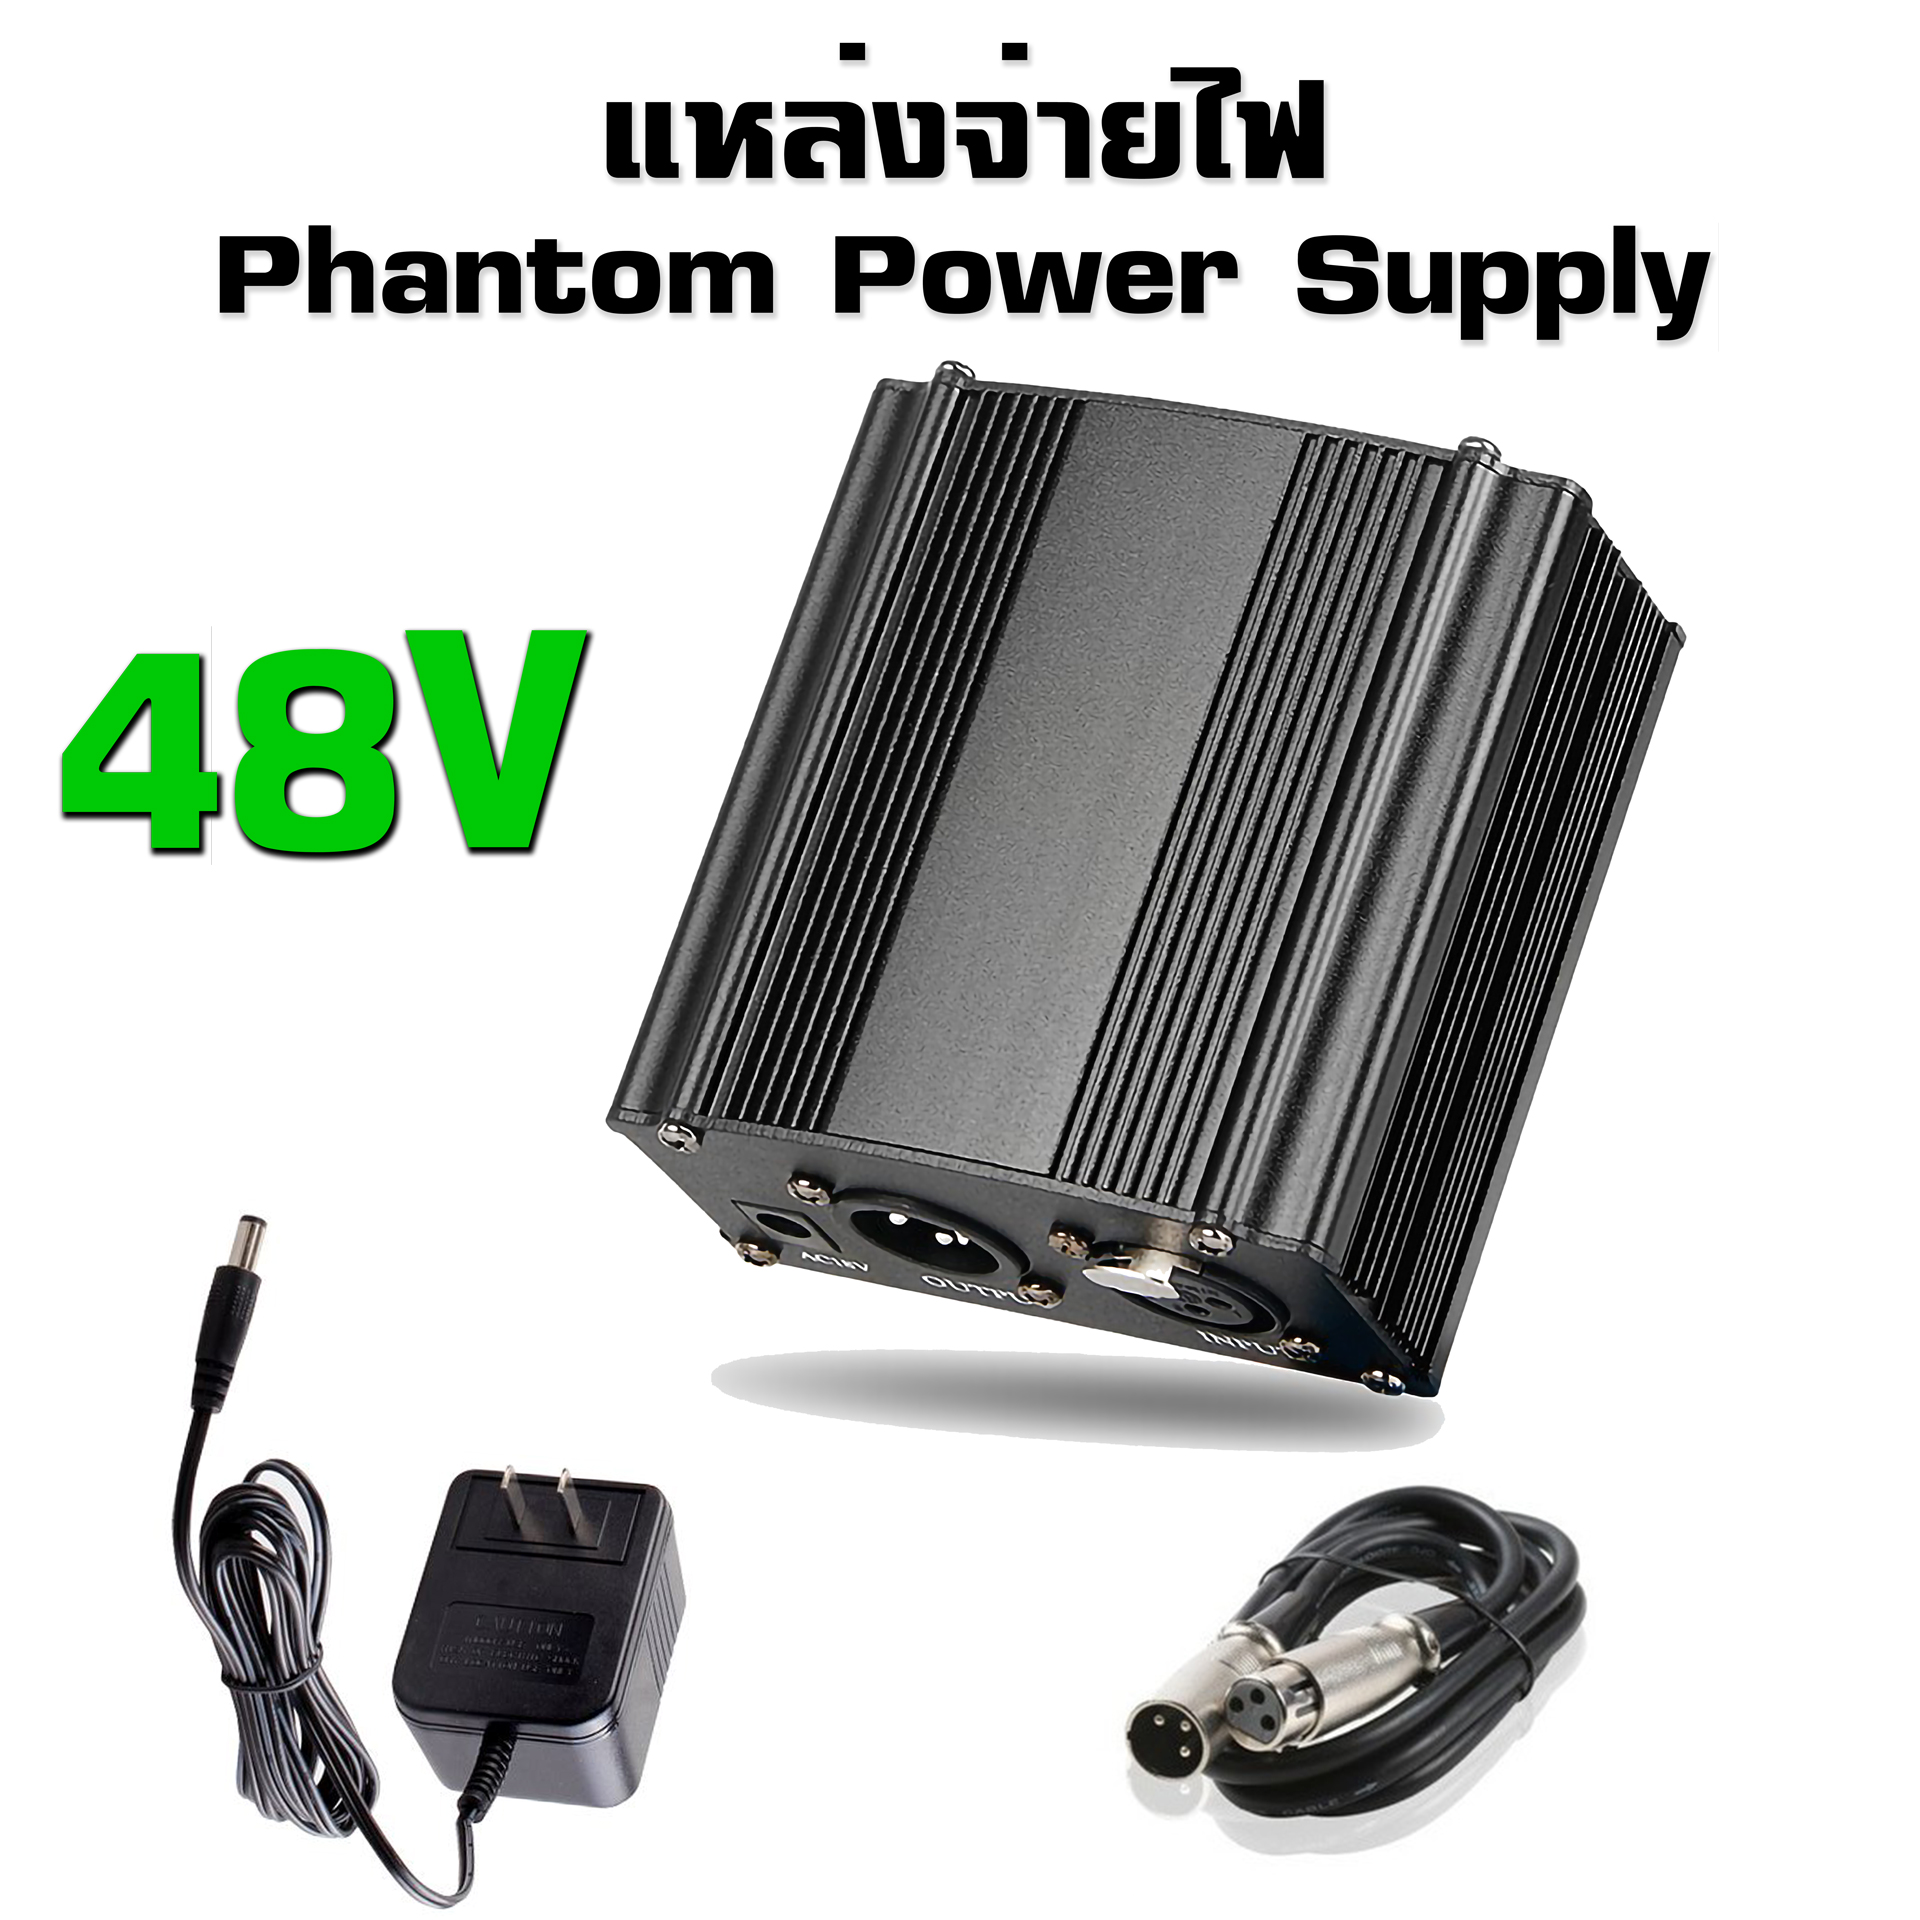 THaiLee Phantom Power Supply 48v แหล่งจ่ายไฟไมโครโฟนคอนเดนเซอร์  ใช้งานเพื่อจ่ายไฟเลี้ยงให้กับไมโครโฟนแบบคอนเดนเซอร์ เครื่องขยายไมโครโฟน